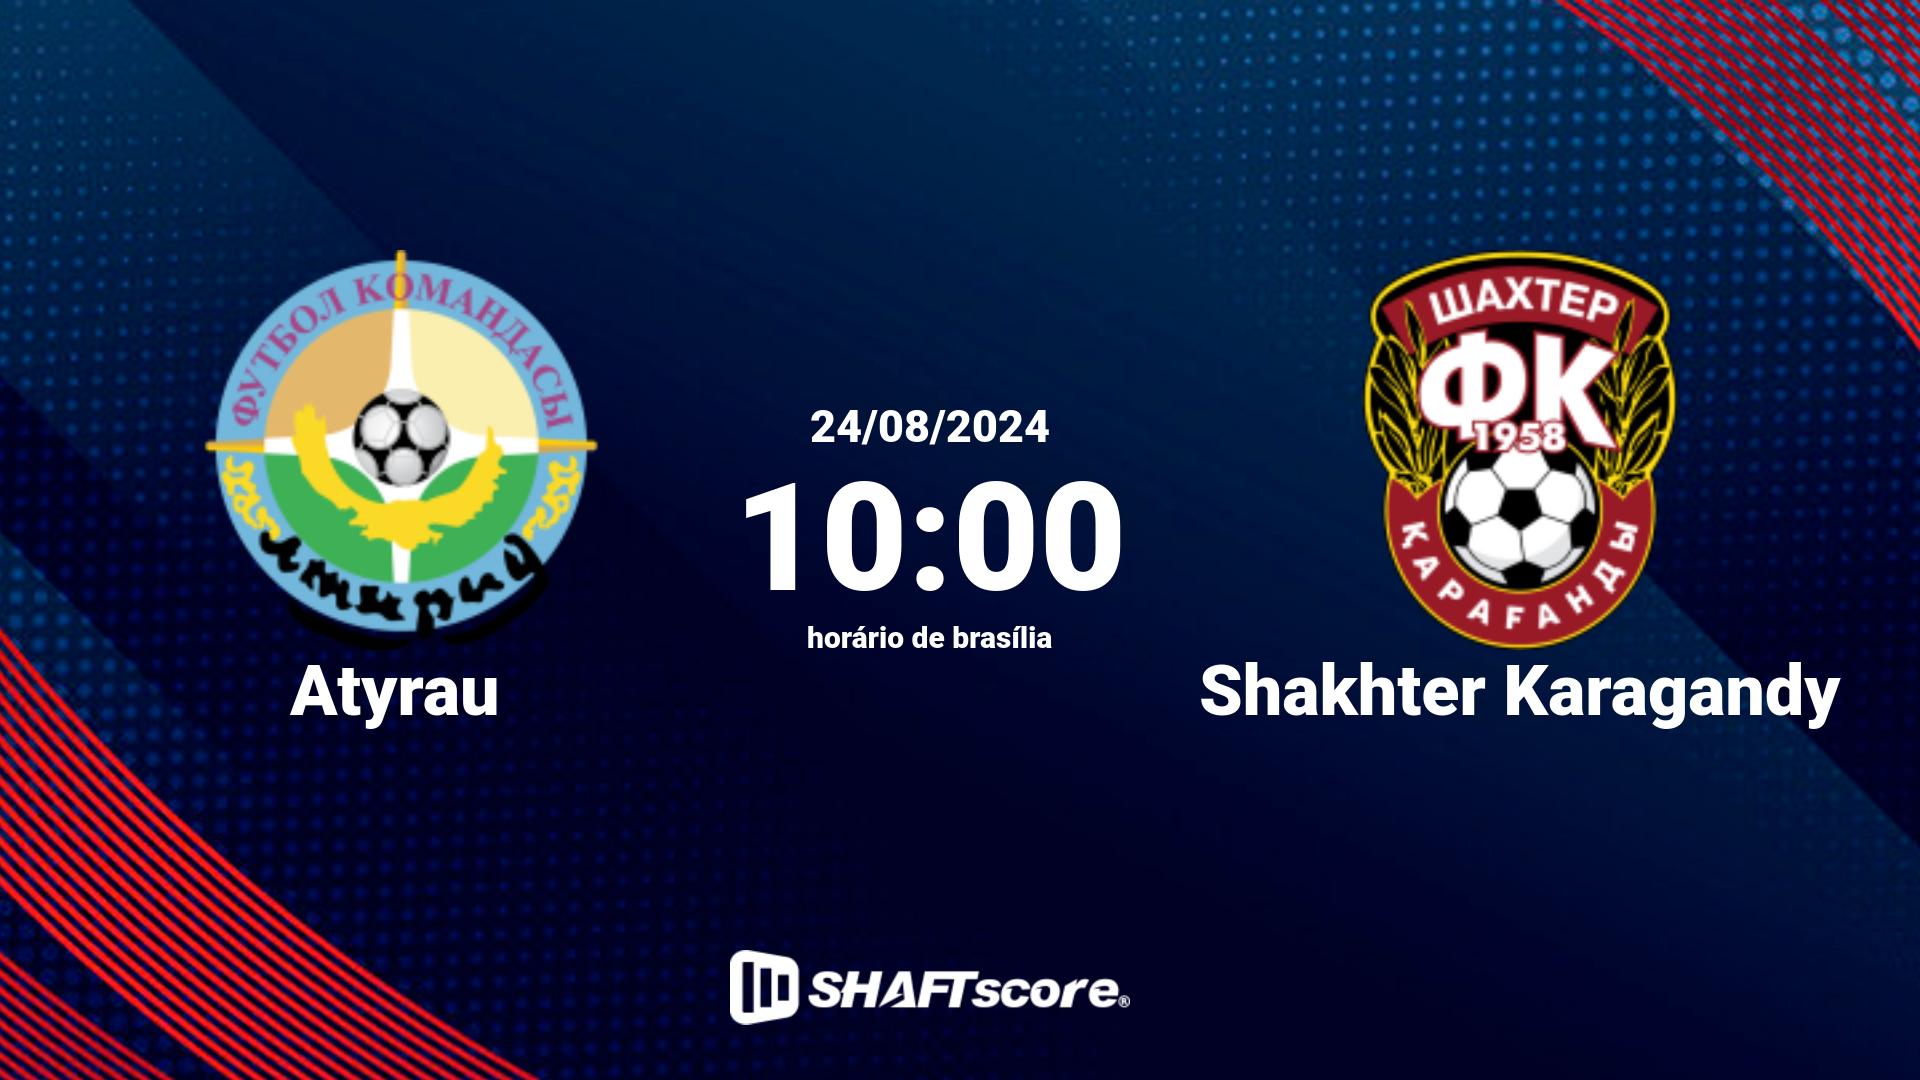 Estatísticas do jogo Atyrau vs Shakhter Karagandy 24.08 10:00